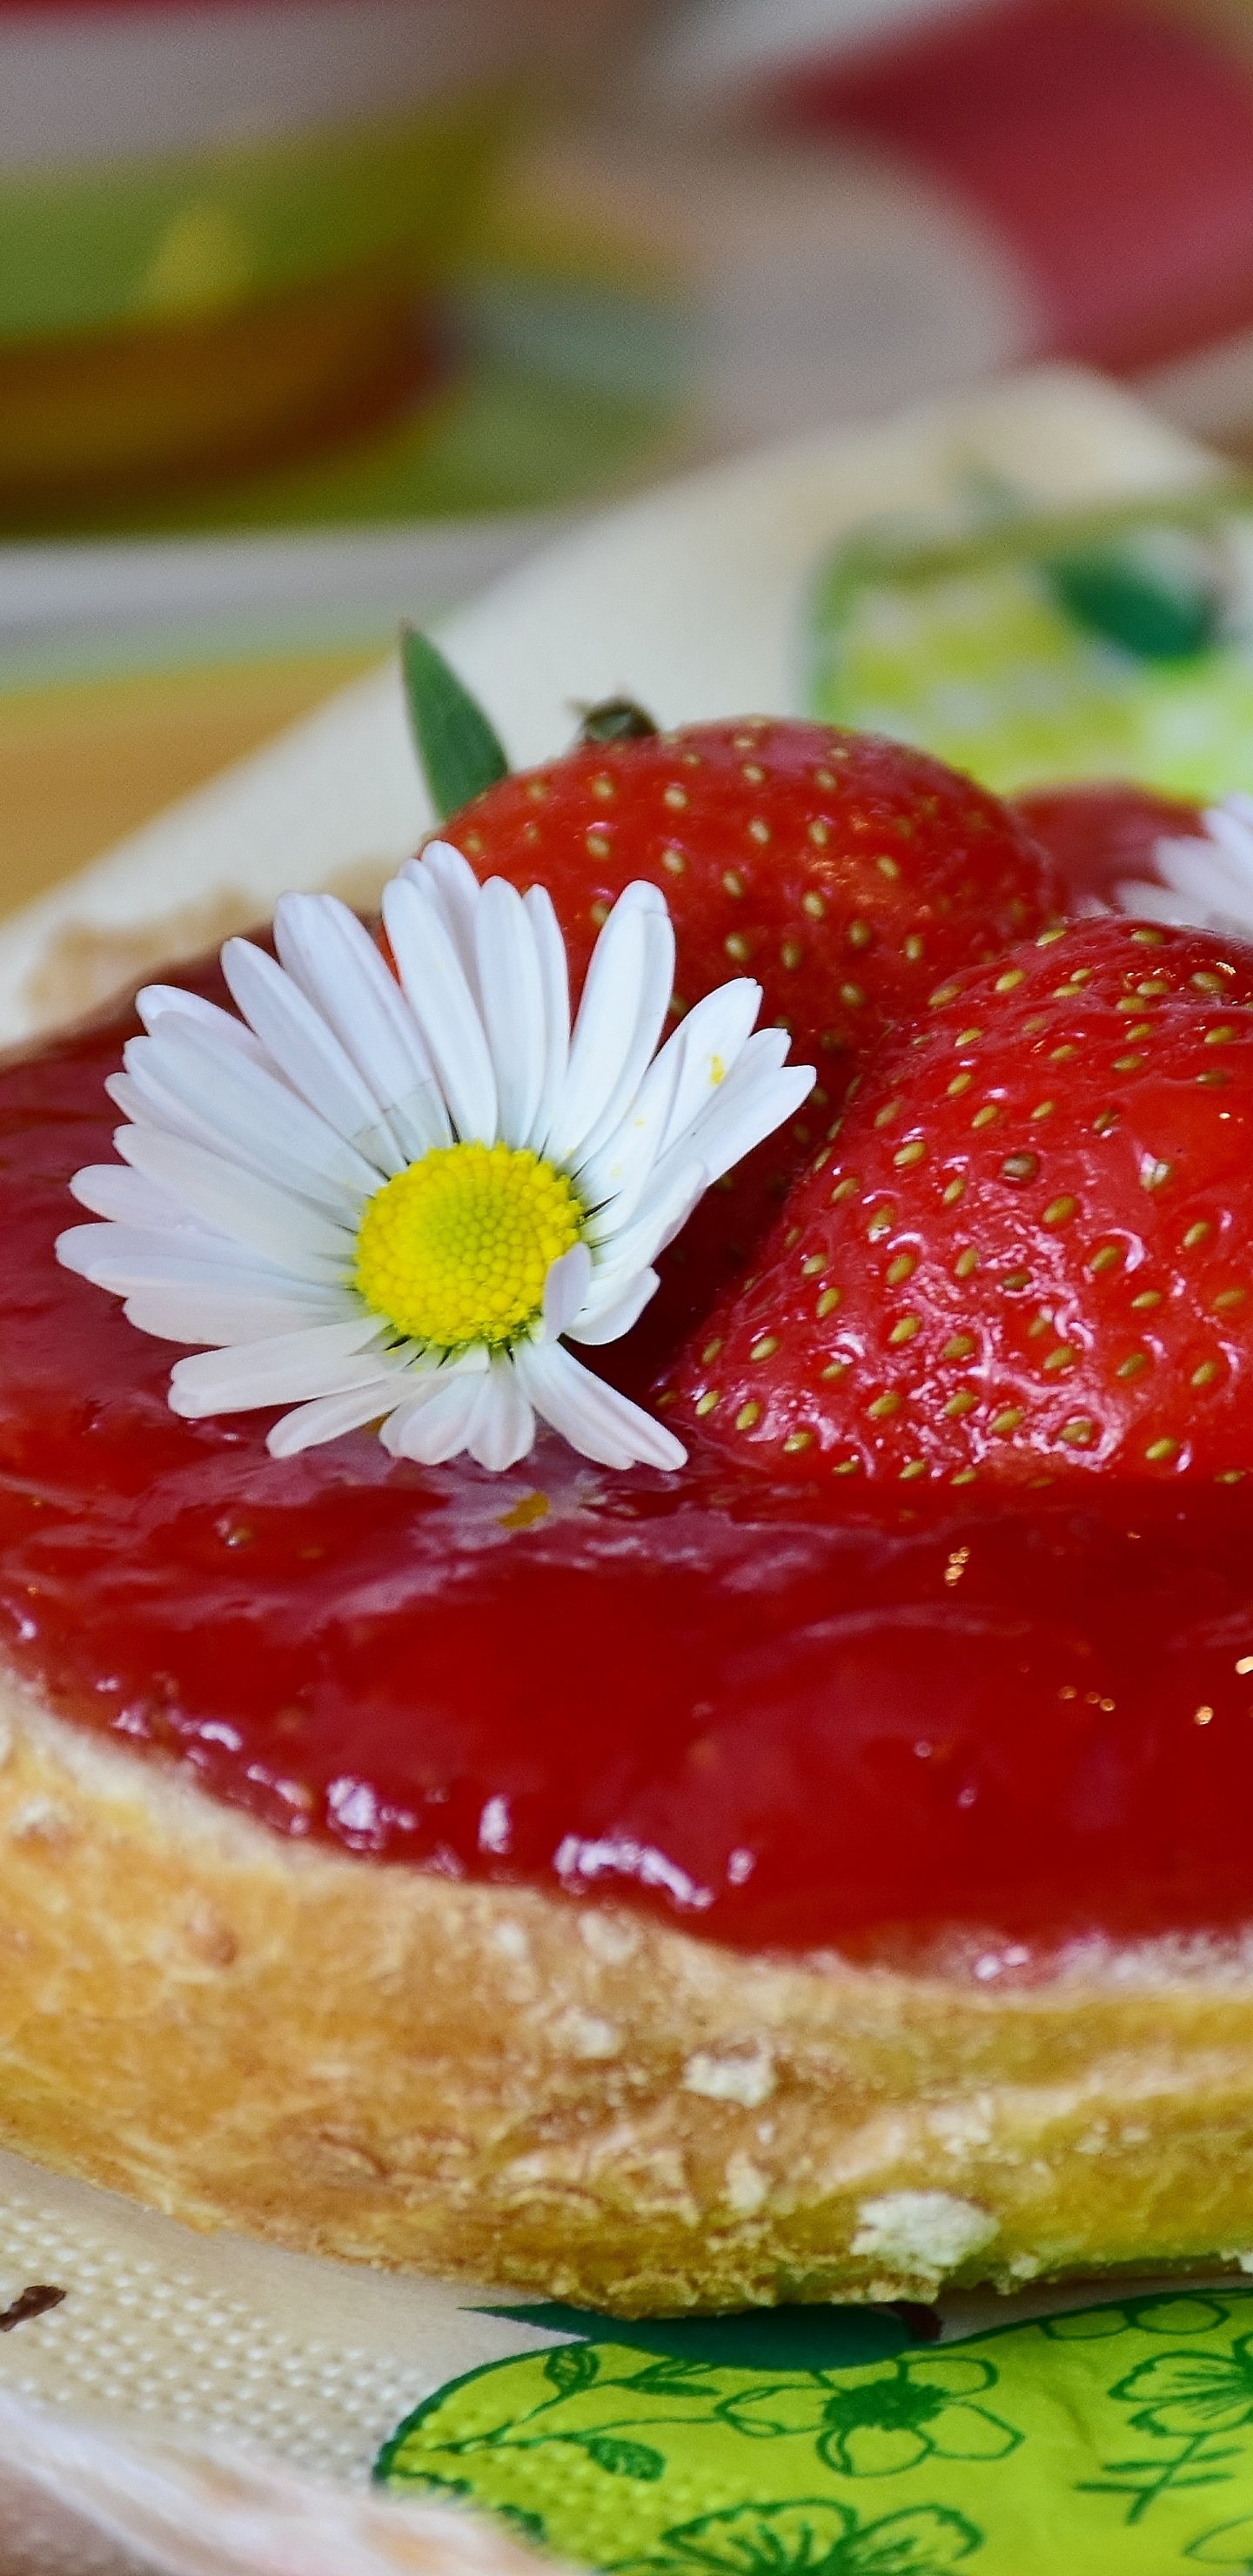 甜点, 食品, 成分, 甜头, 草莓 壁纸 1440x2960 允许